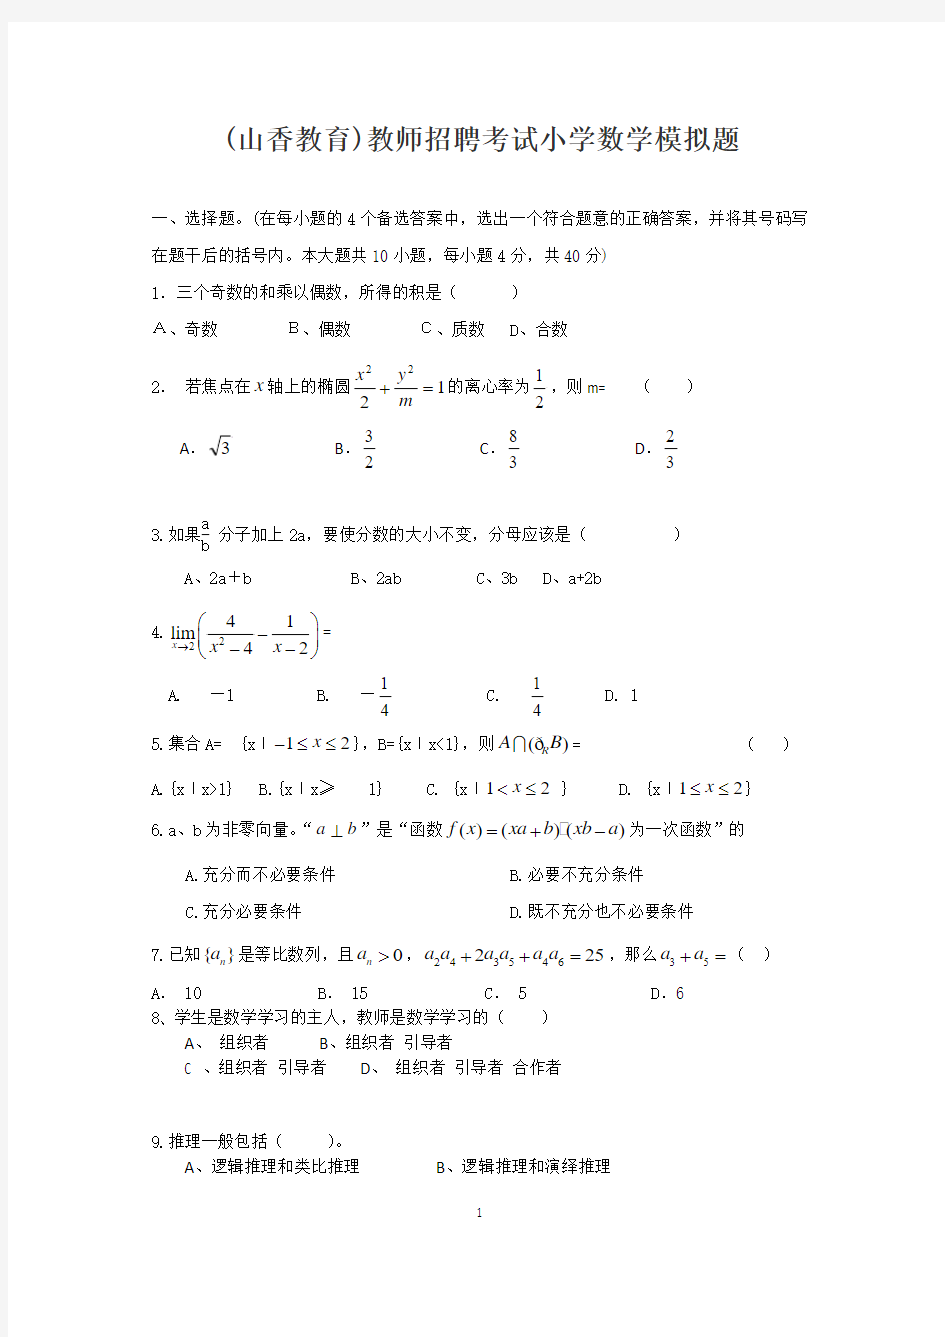 (山香教育)教师招聘考试小学数学模拟题